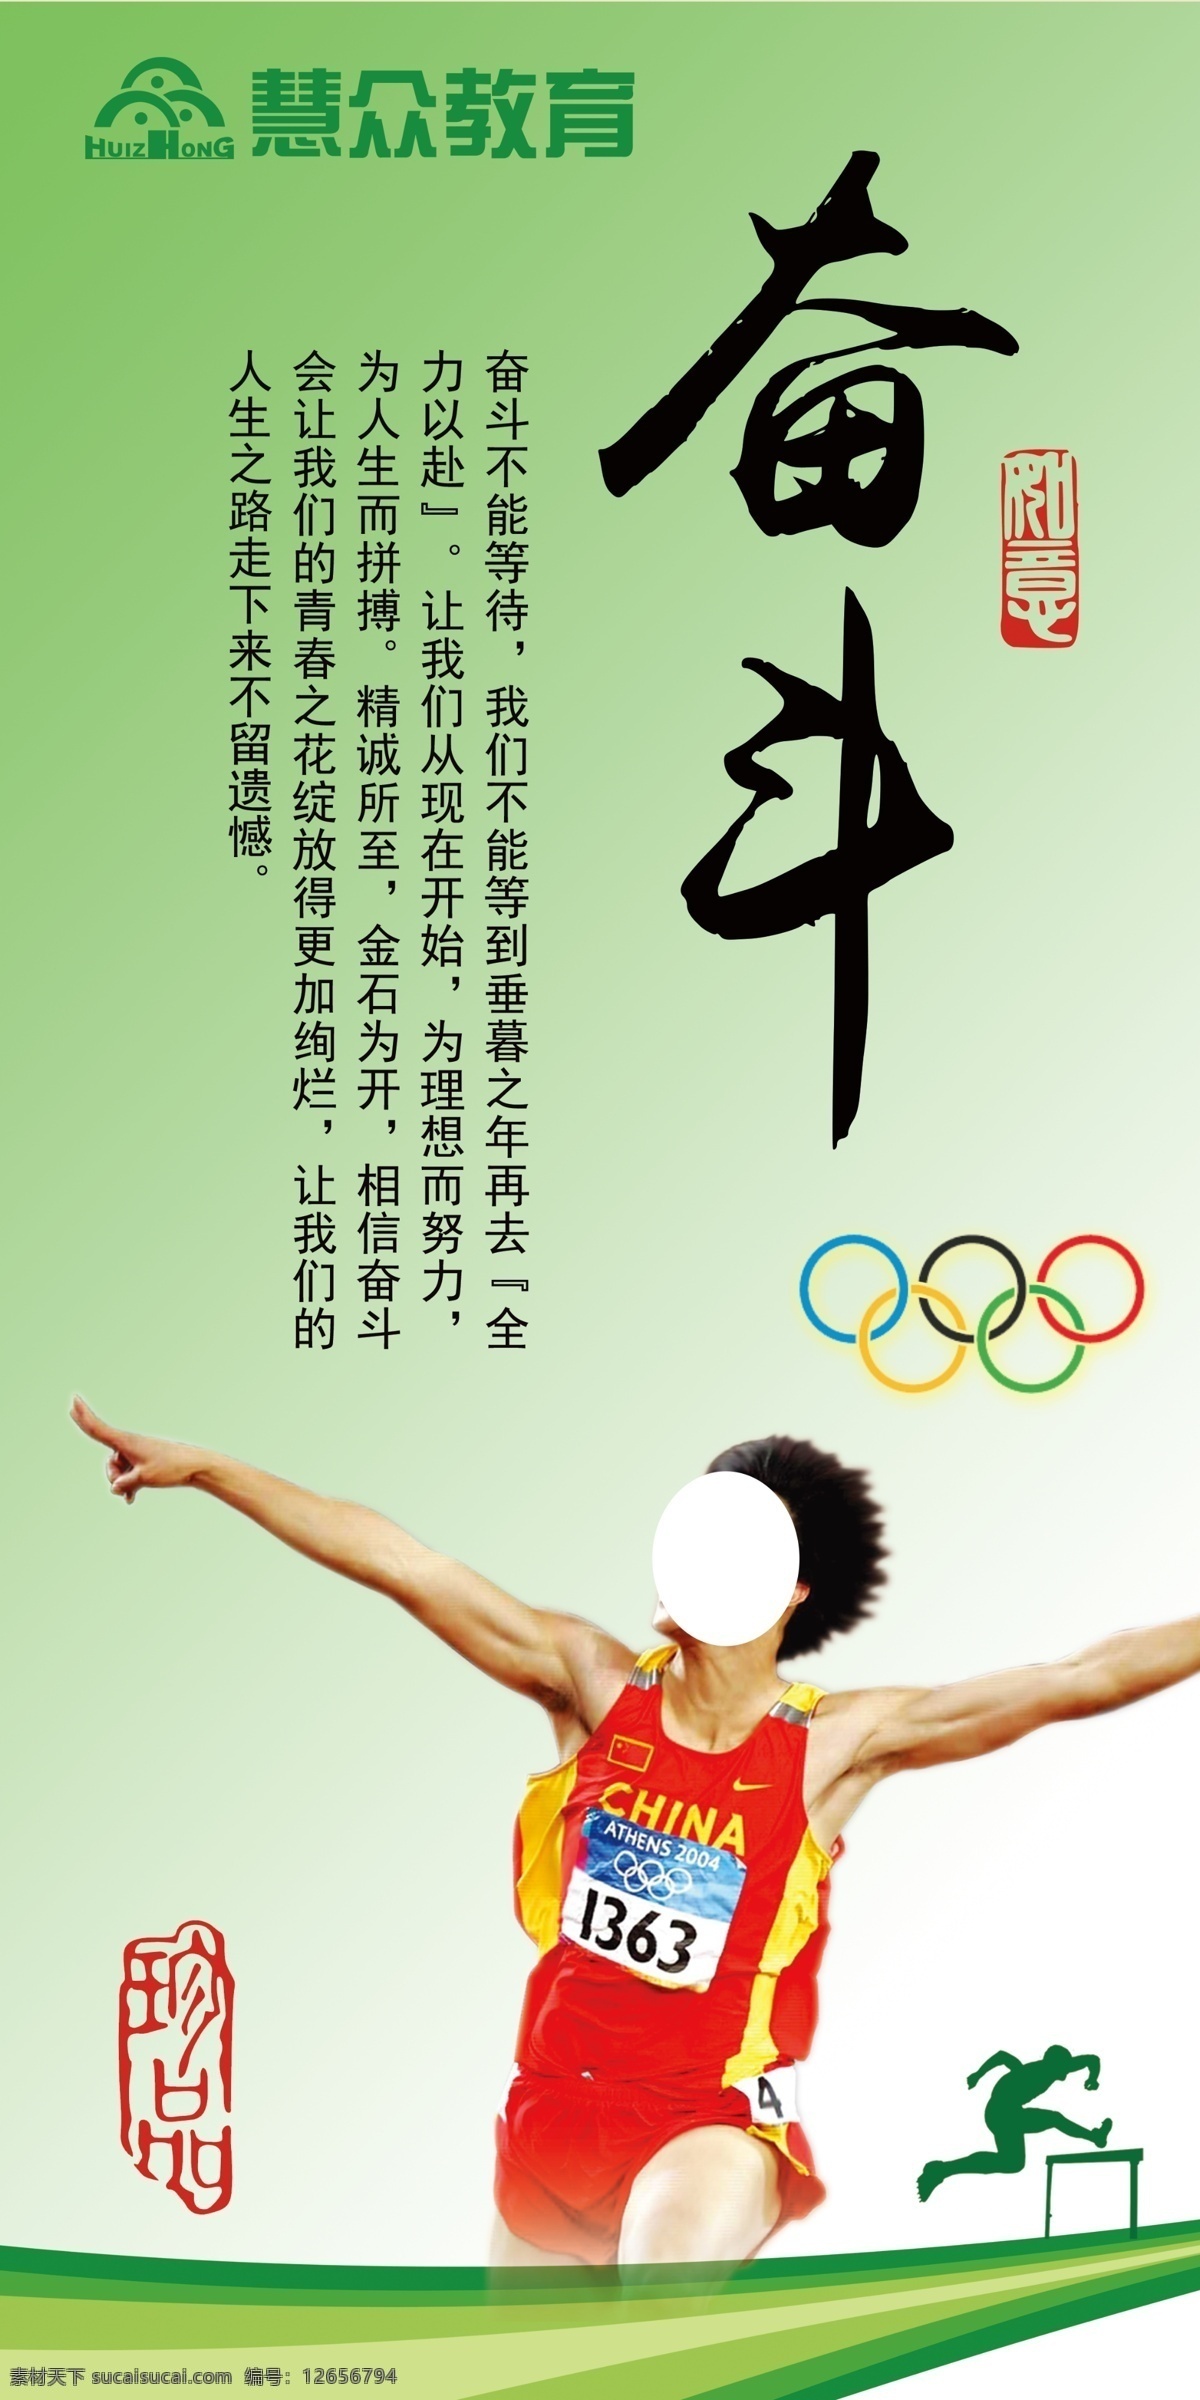 校园文化展板 校园 文化 展板 教育 励志 奋斗 刘翔 五环 奥运 冠军 展板模板